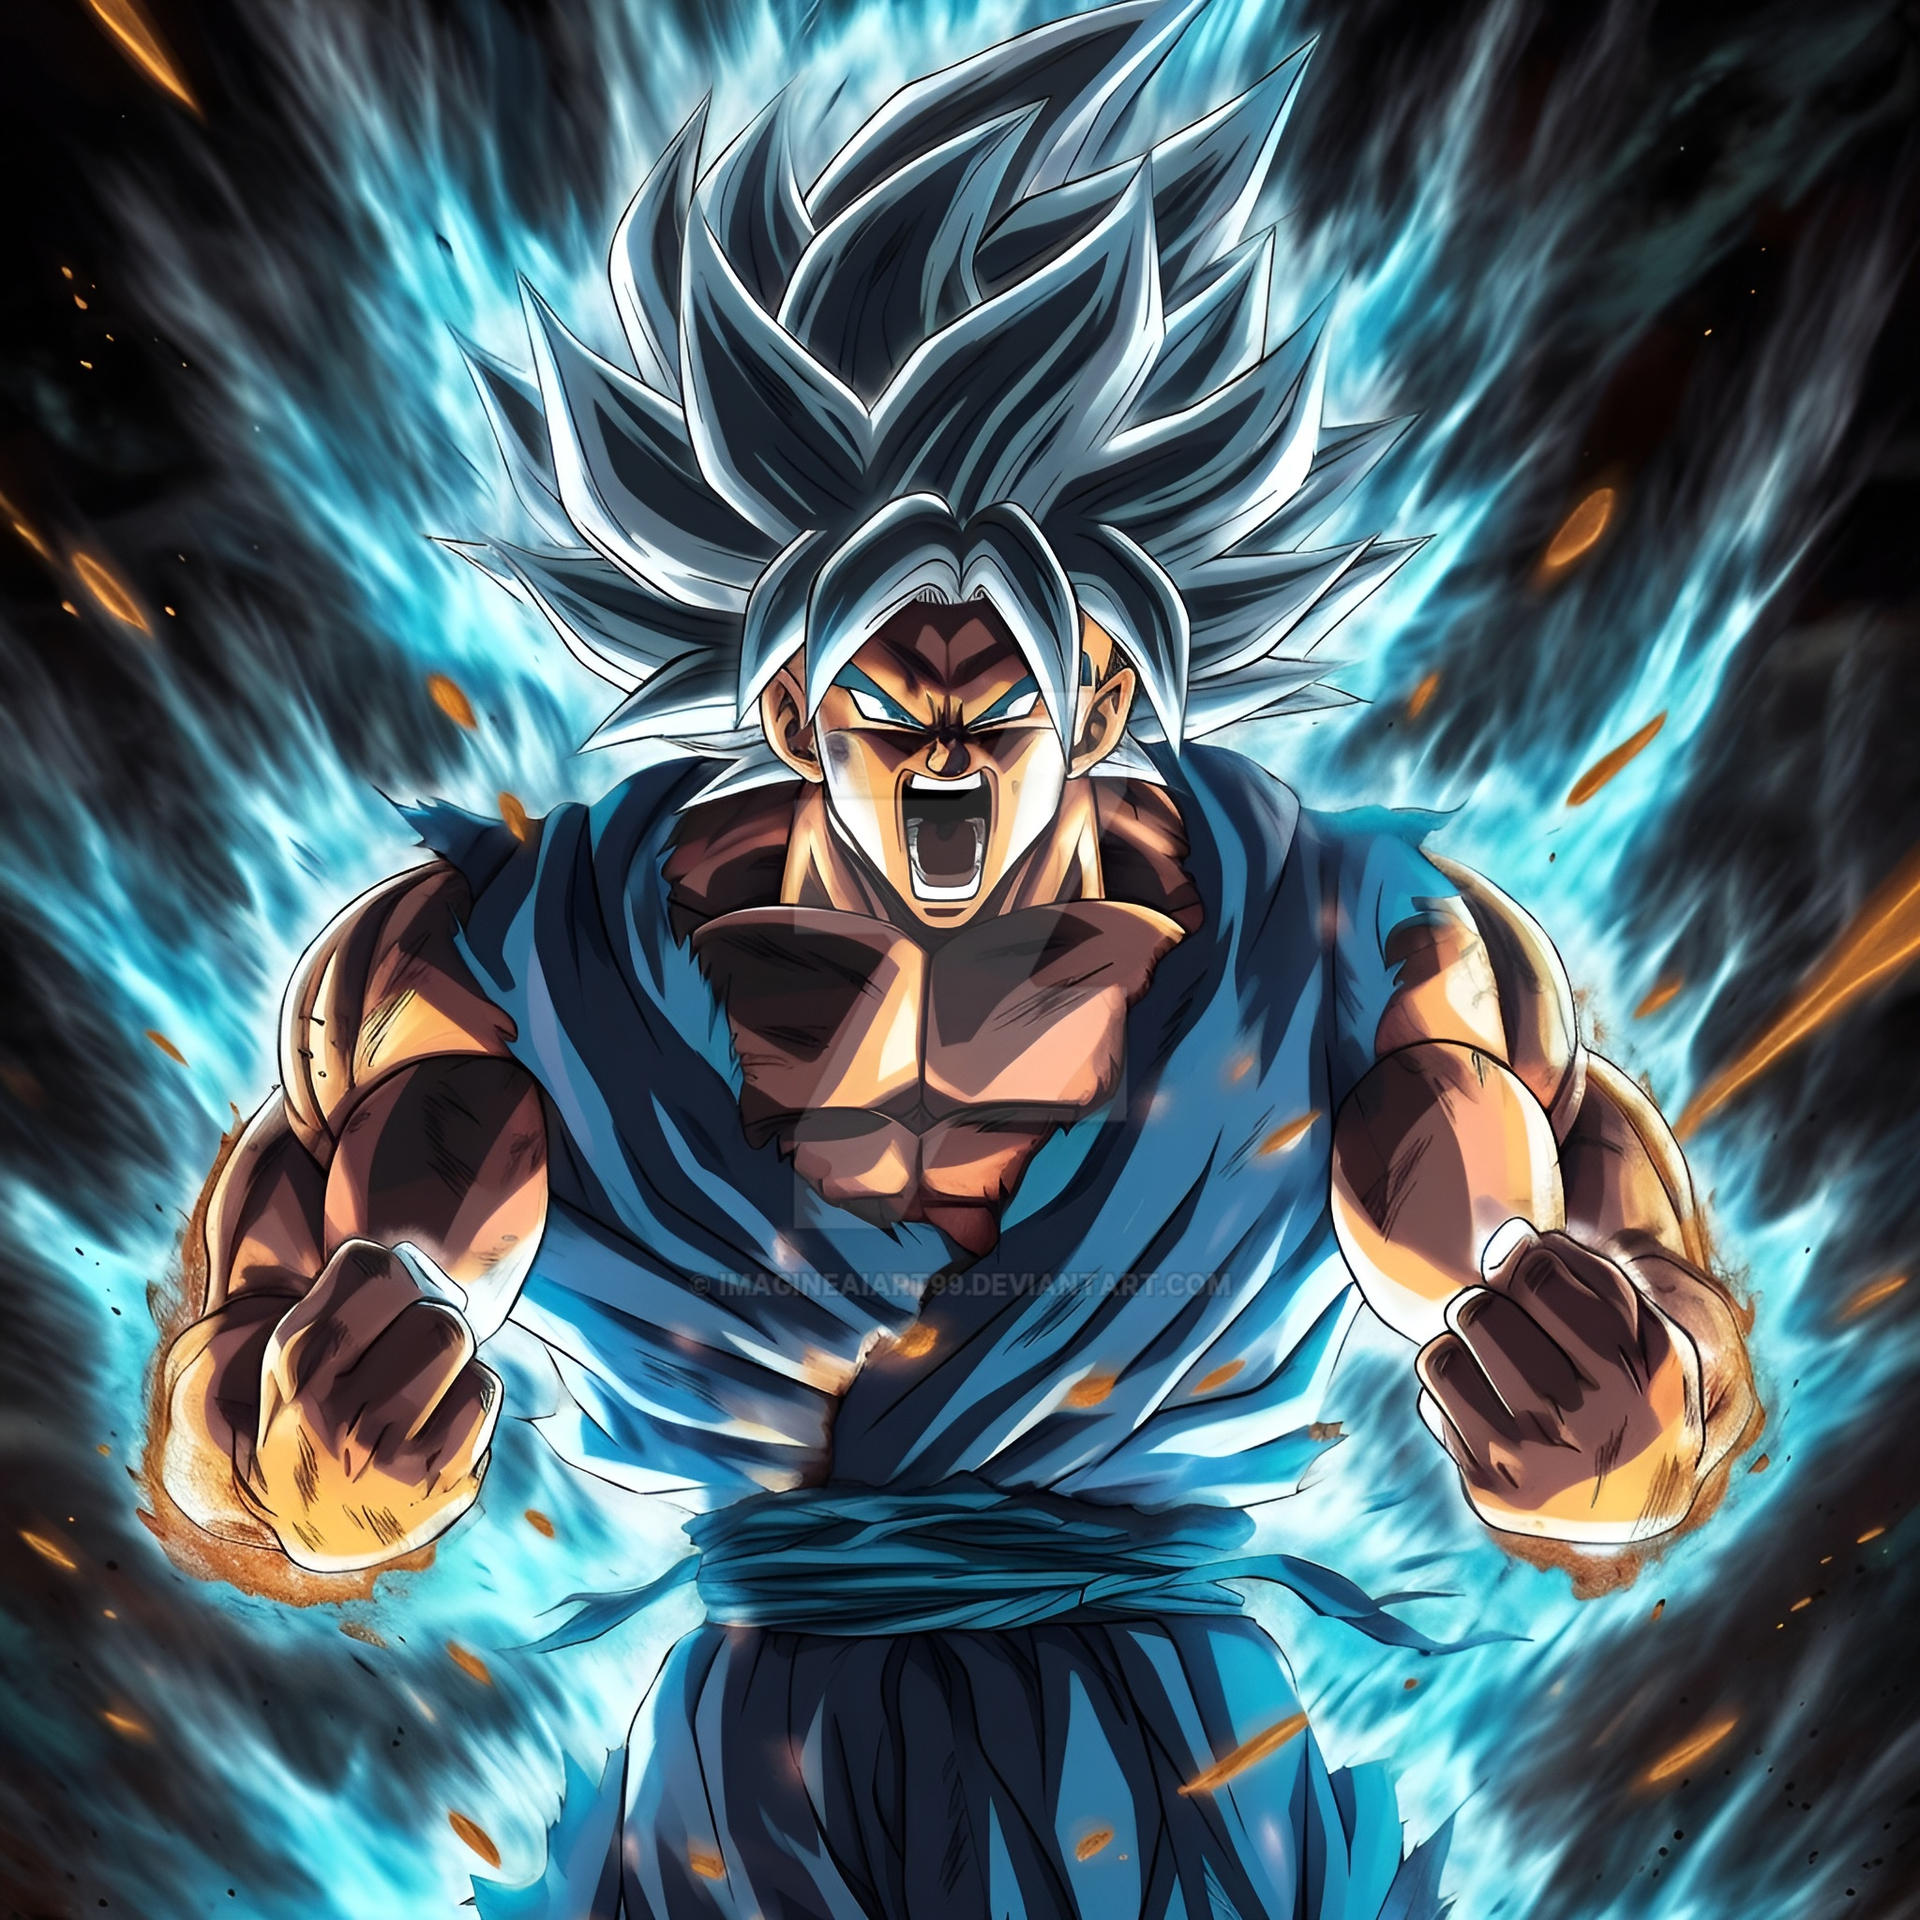 Goku super Saiyan (3) by ImagineAiArt99 on DeviantArt